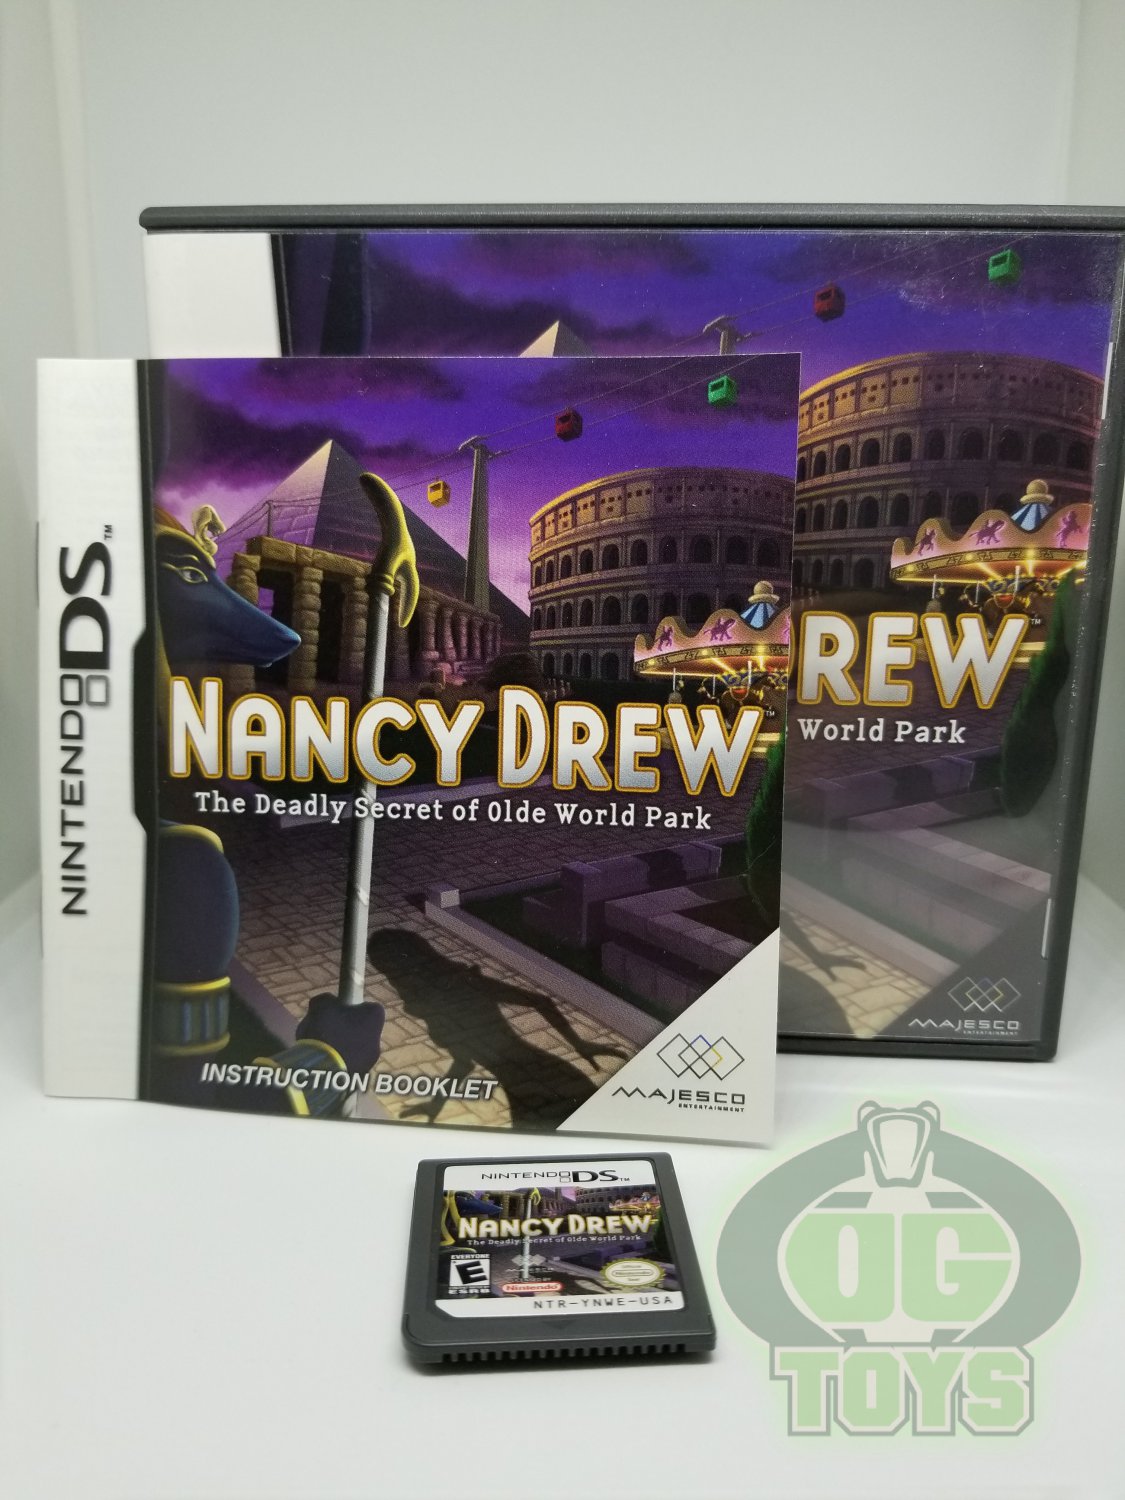 Nancy Drew Interactive Games Her Interactive